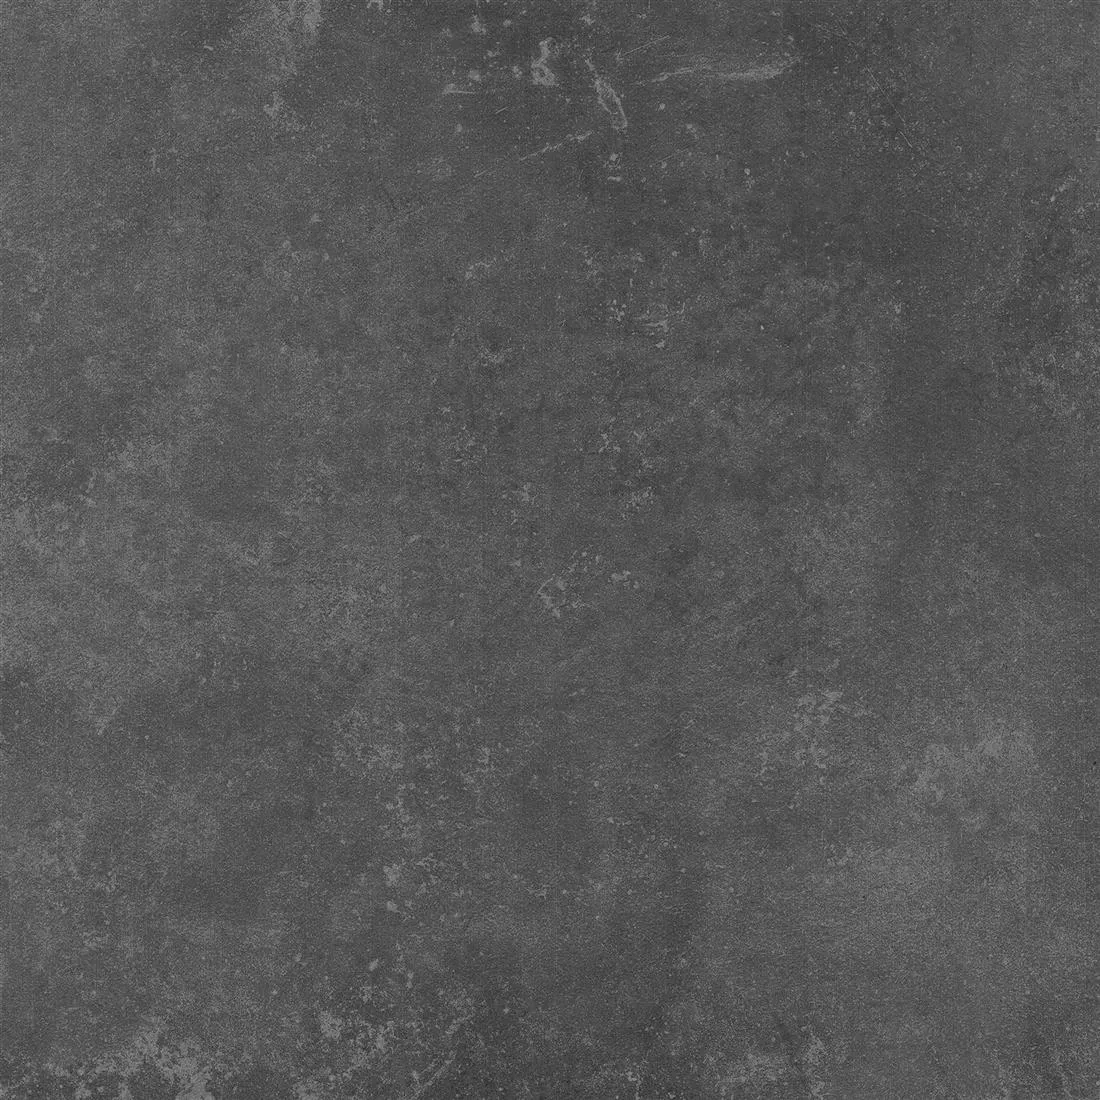 Πλακάκια Δαπέδου Nepal Σκούρο Γκρι 100x100x0,7cm